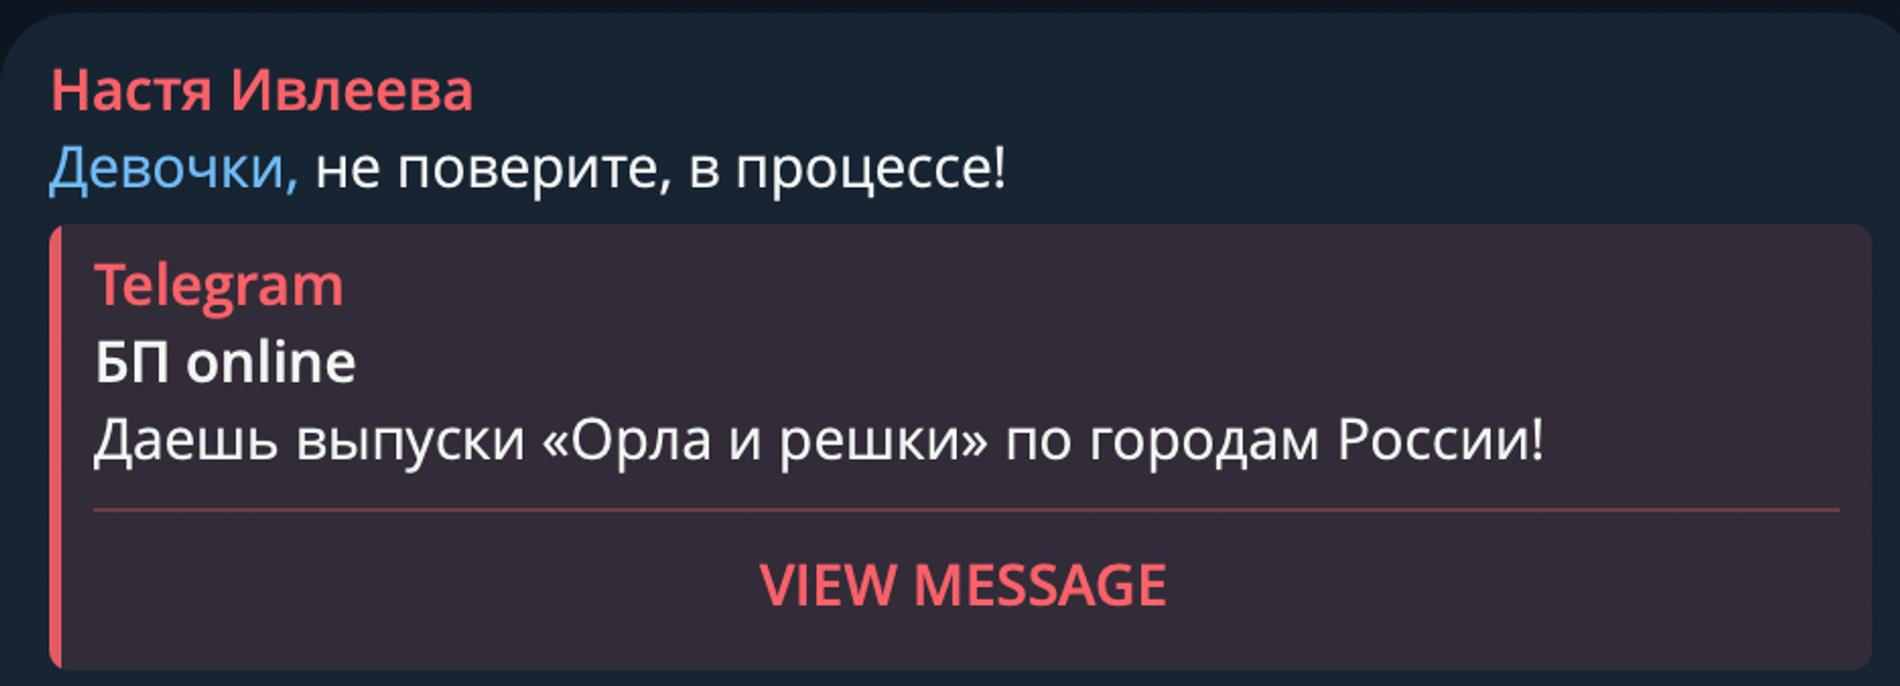 Фото: Telegram-канал Насти Ивлеевой